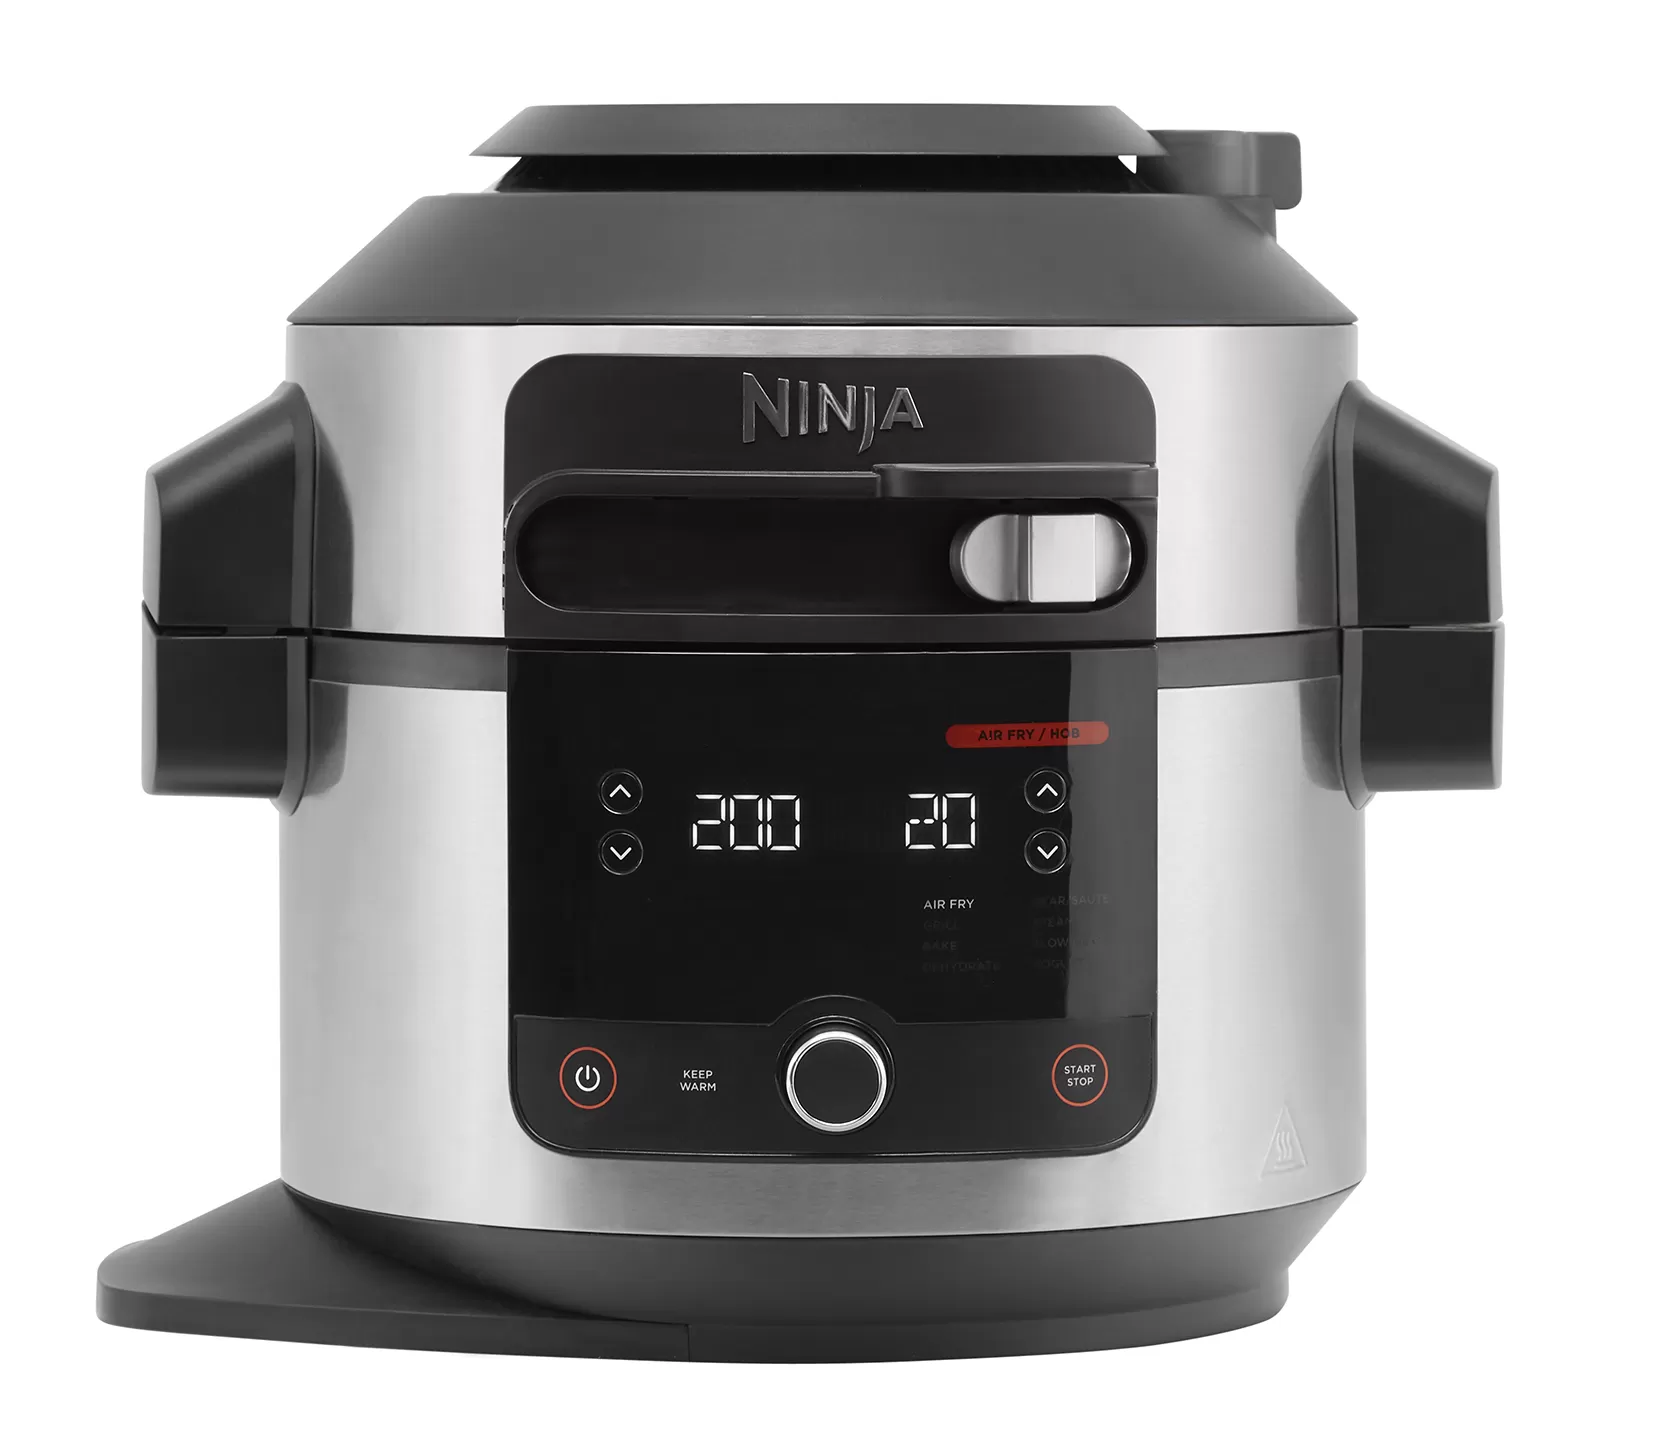 Multicooker ninja foodi 11-in-1 ol550eu 6l 1460w negru/argintiu